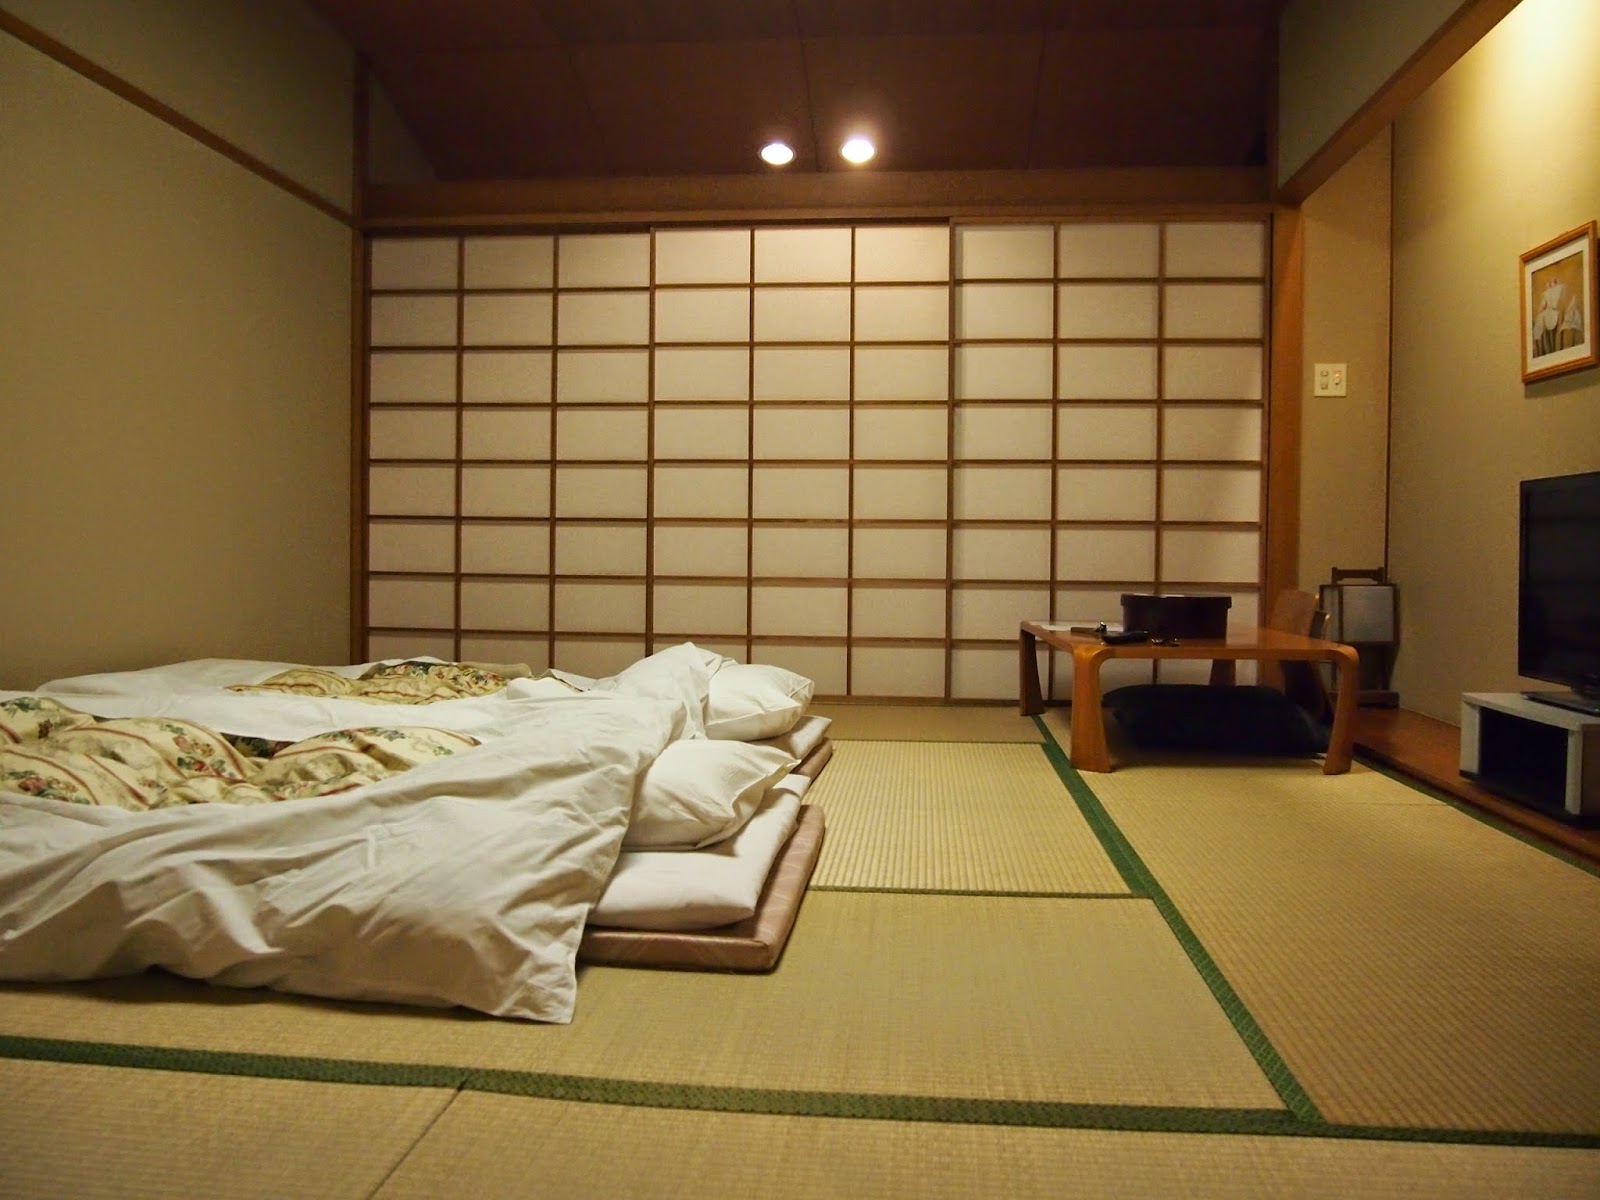 Photo intérieure de la chambre de style japonais